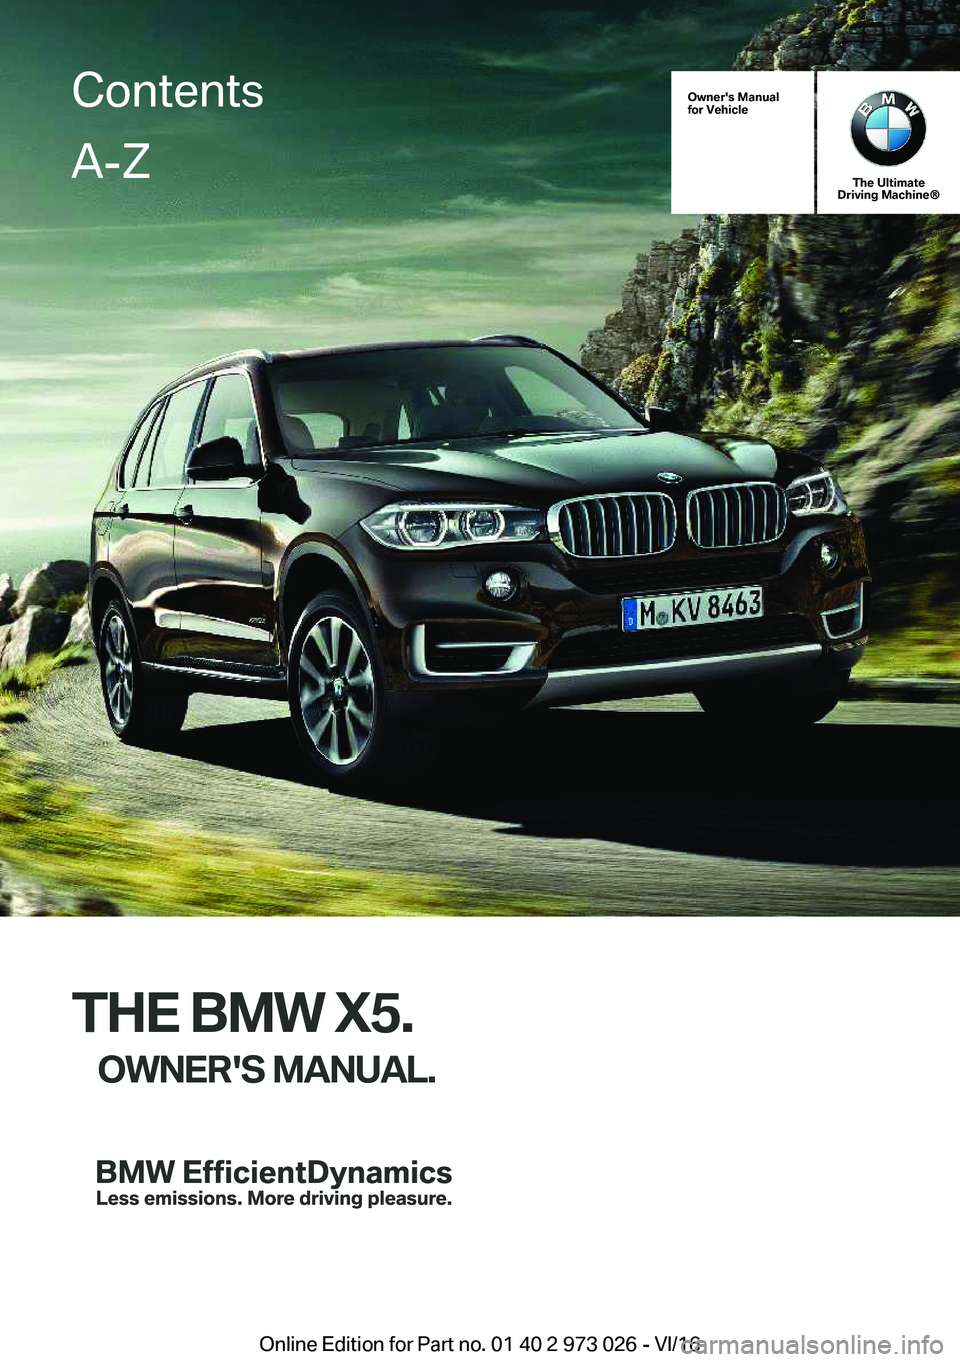 BMW X5 2017  Owners Manual �O�w�n�e�r�'�s��M�a�n�u�a�l
�f�o�r��V�e�h�i�c�l�e
�T�h�e��U�l�t�i�m�a�t�e
�D�r�i�v�i�n�g��M�a�c�h�i�n�e�n
�T�H�E��B�M�W��X�5�.
�O�W�N�E�R�'�S��M�A�N�U�A�L�.
�C�o�n�t�e�n�t�s�A�-�Z
�O�n�